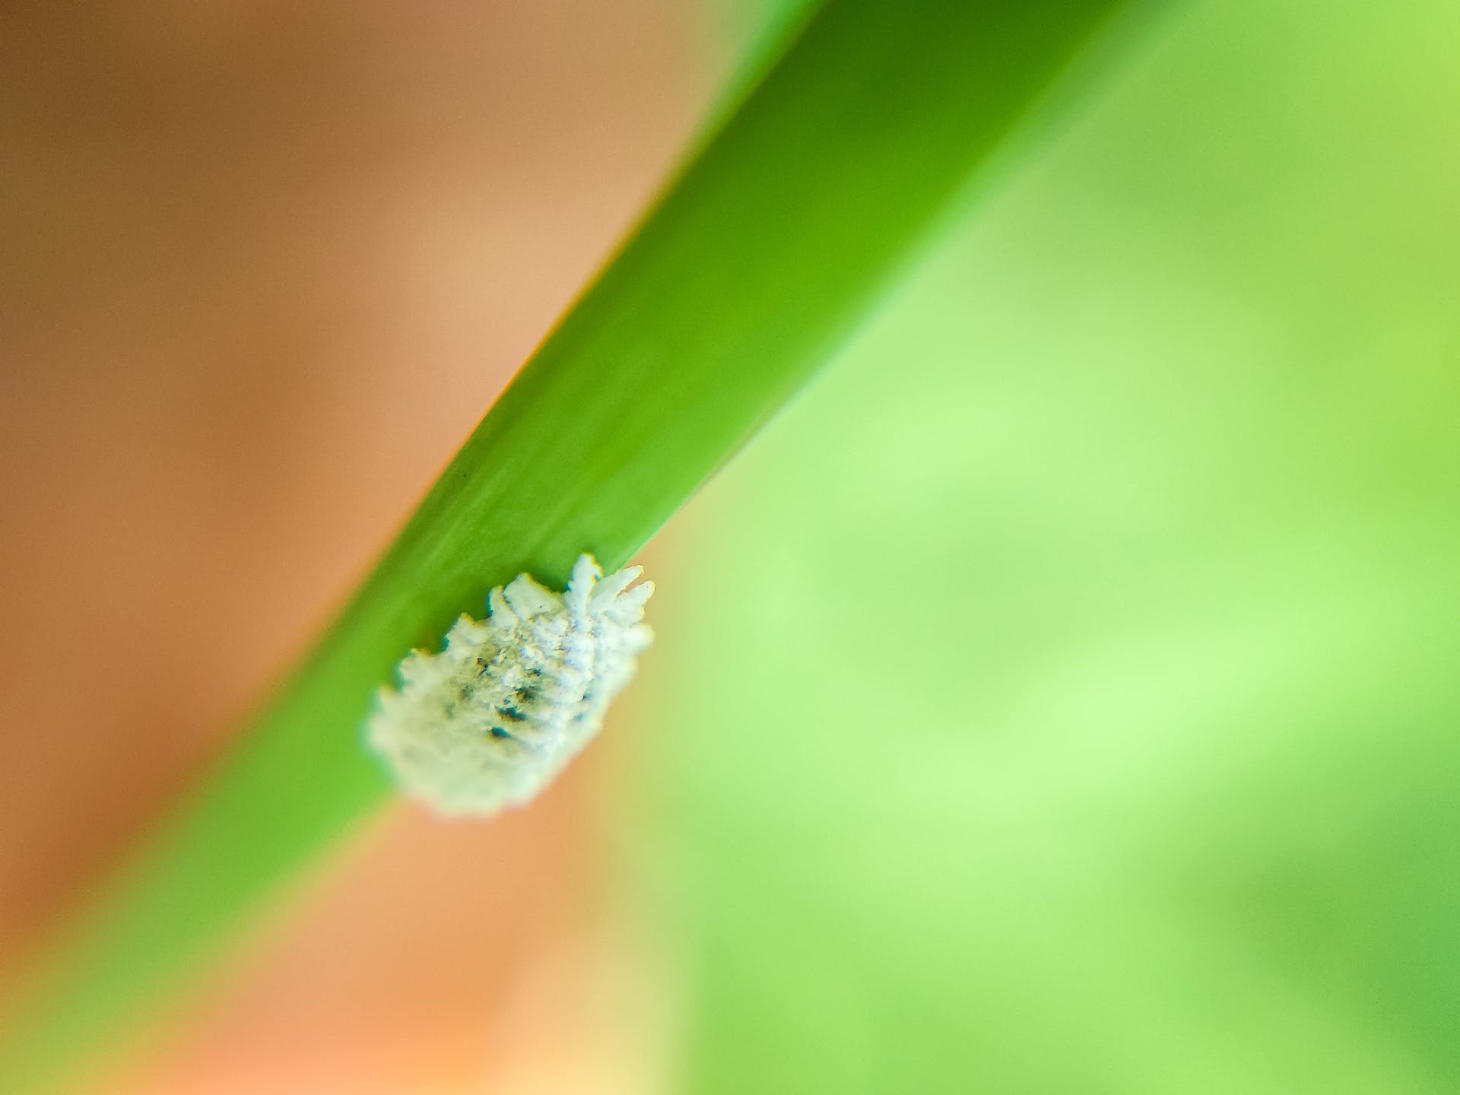 mealybug close up on green plant